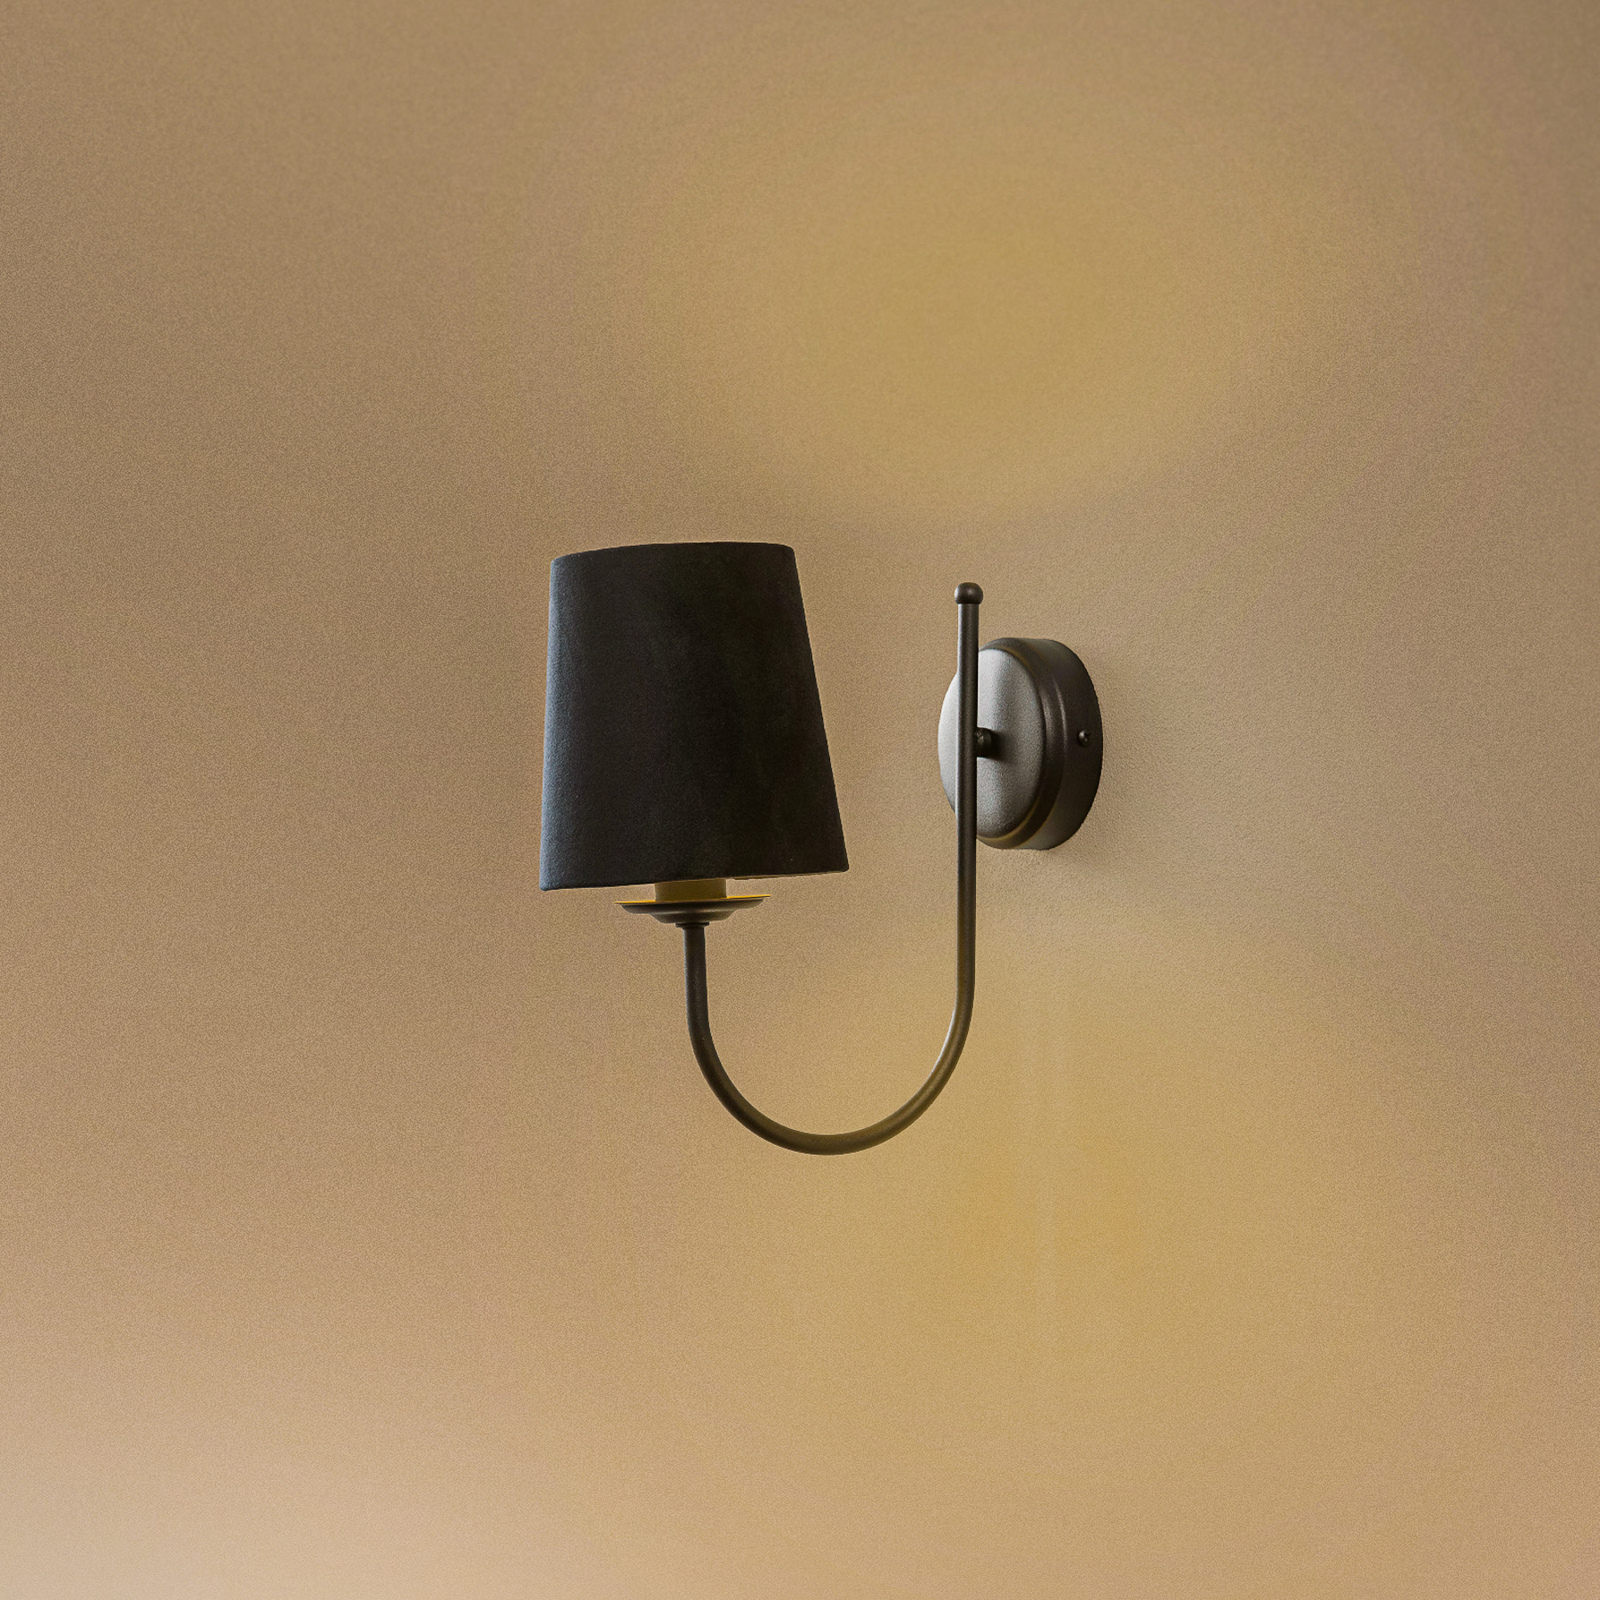 Vägglampa Bona, 1 lampa, svart